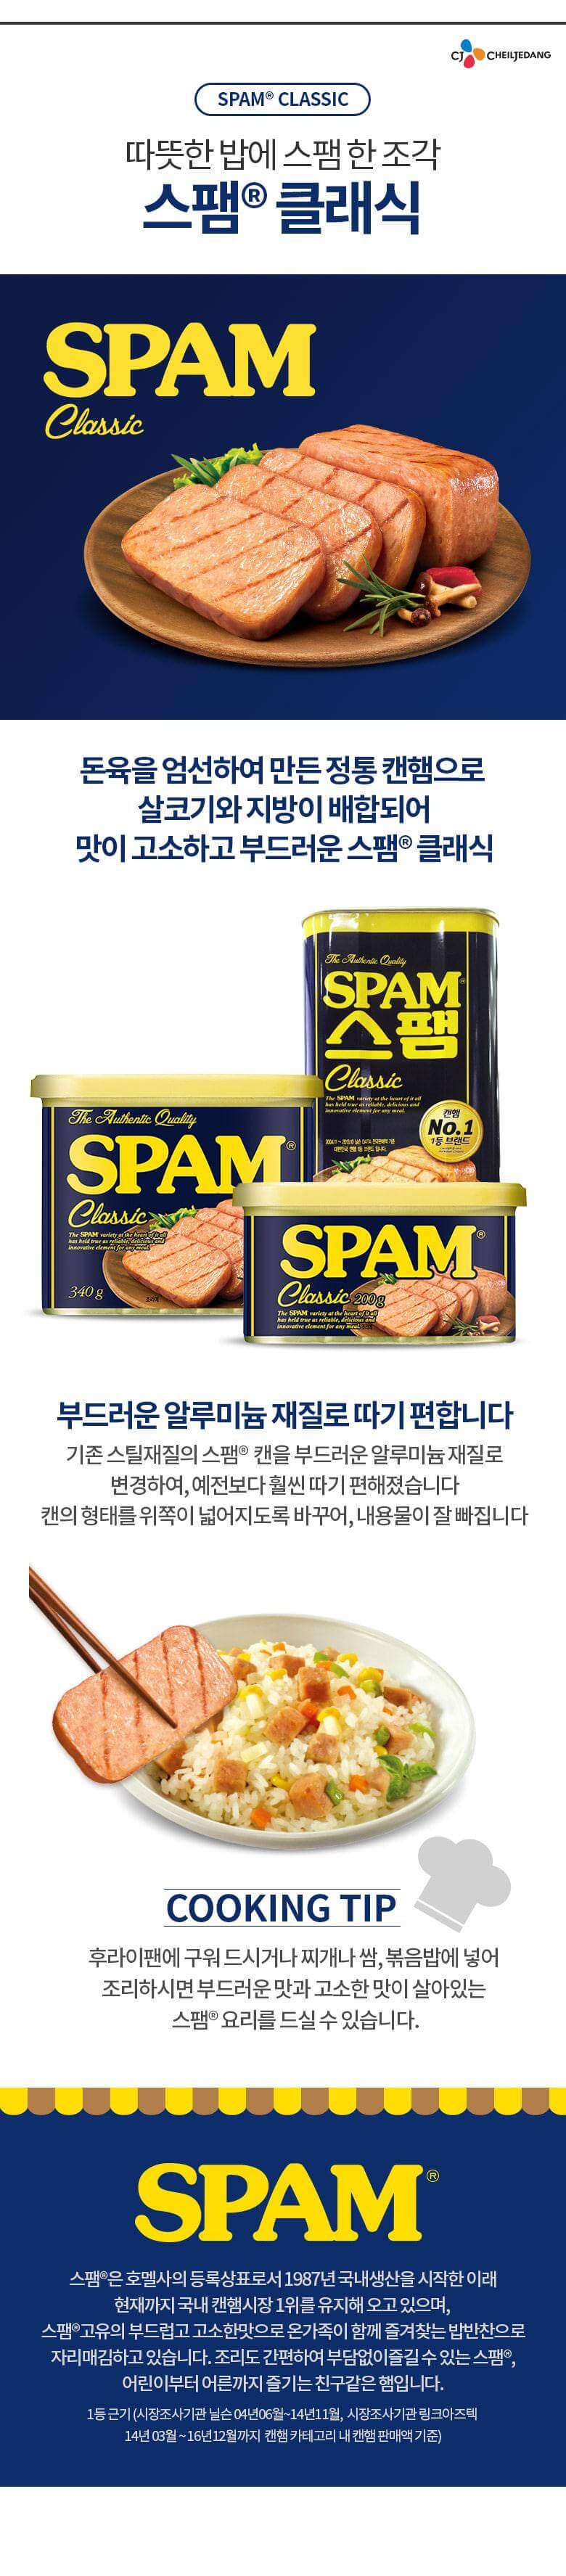 韓國食品-[CJ] 스팸[클래식] 200g